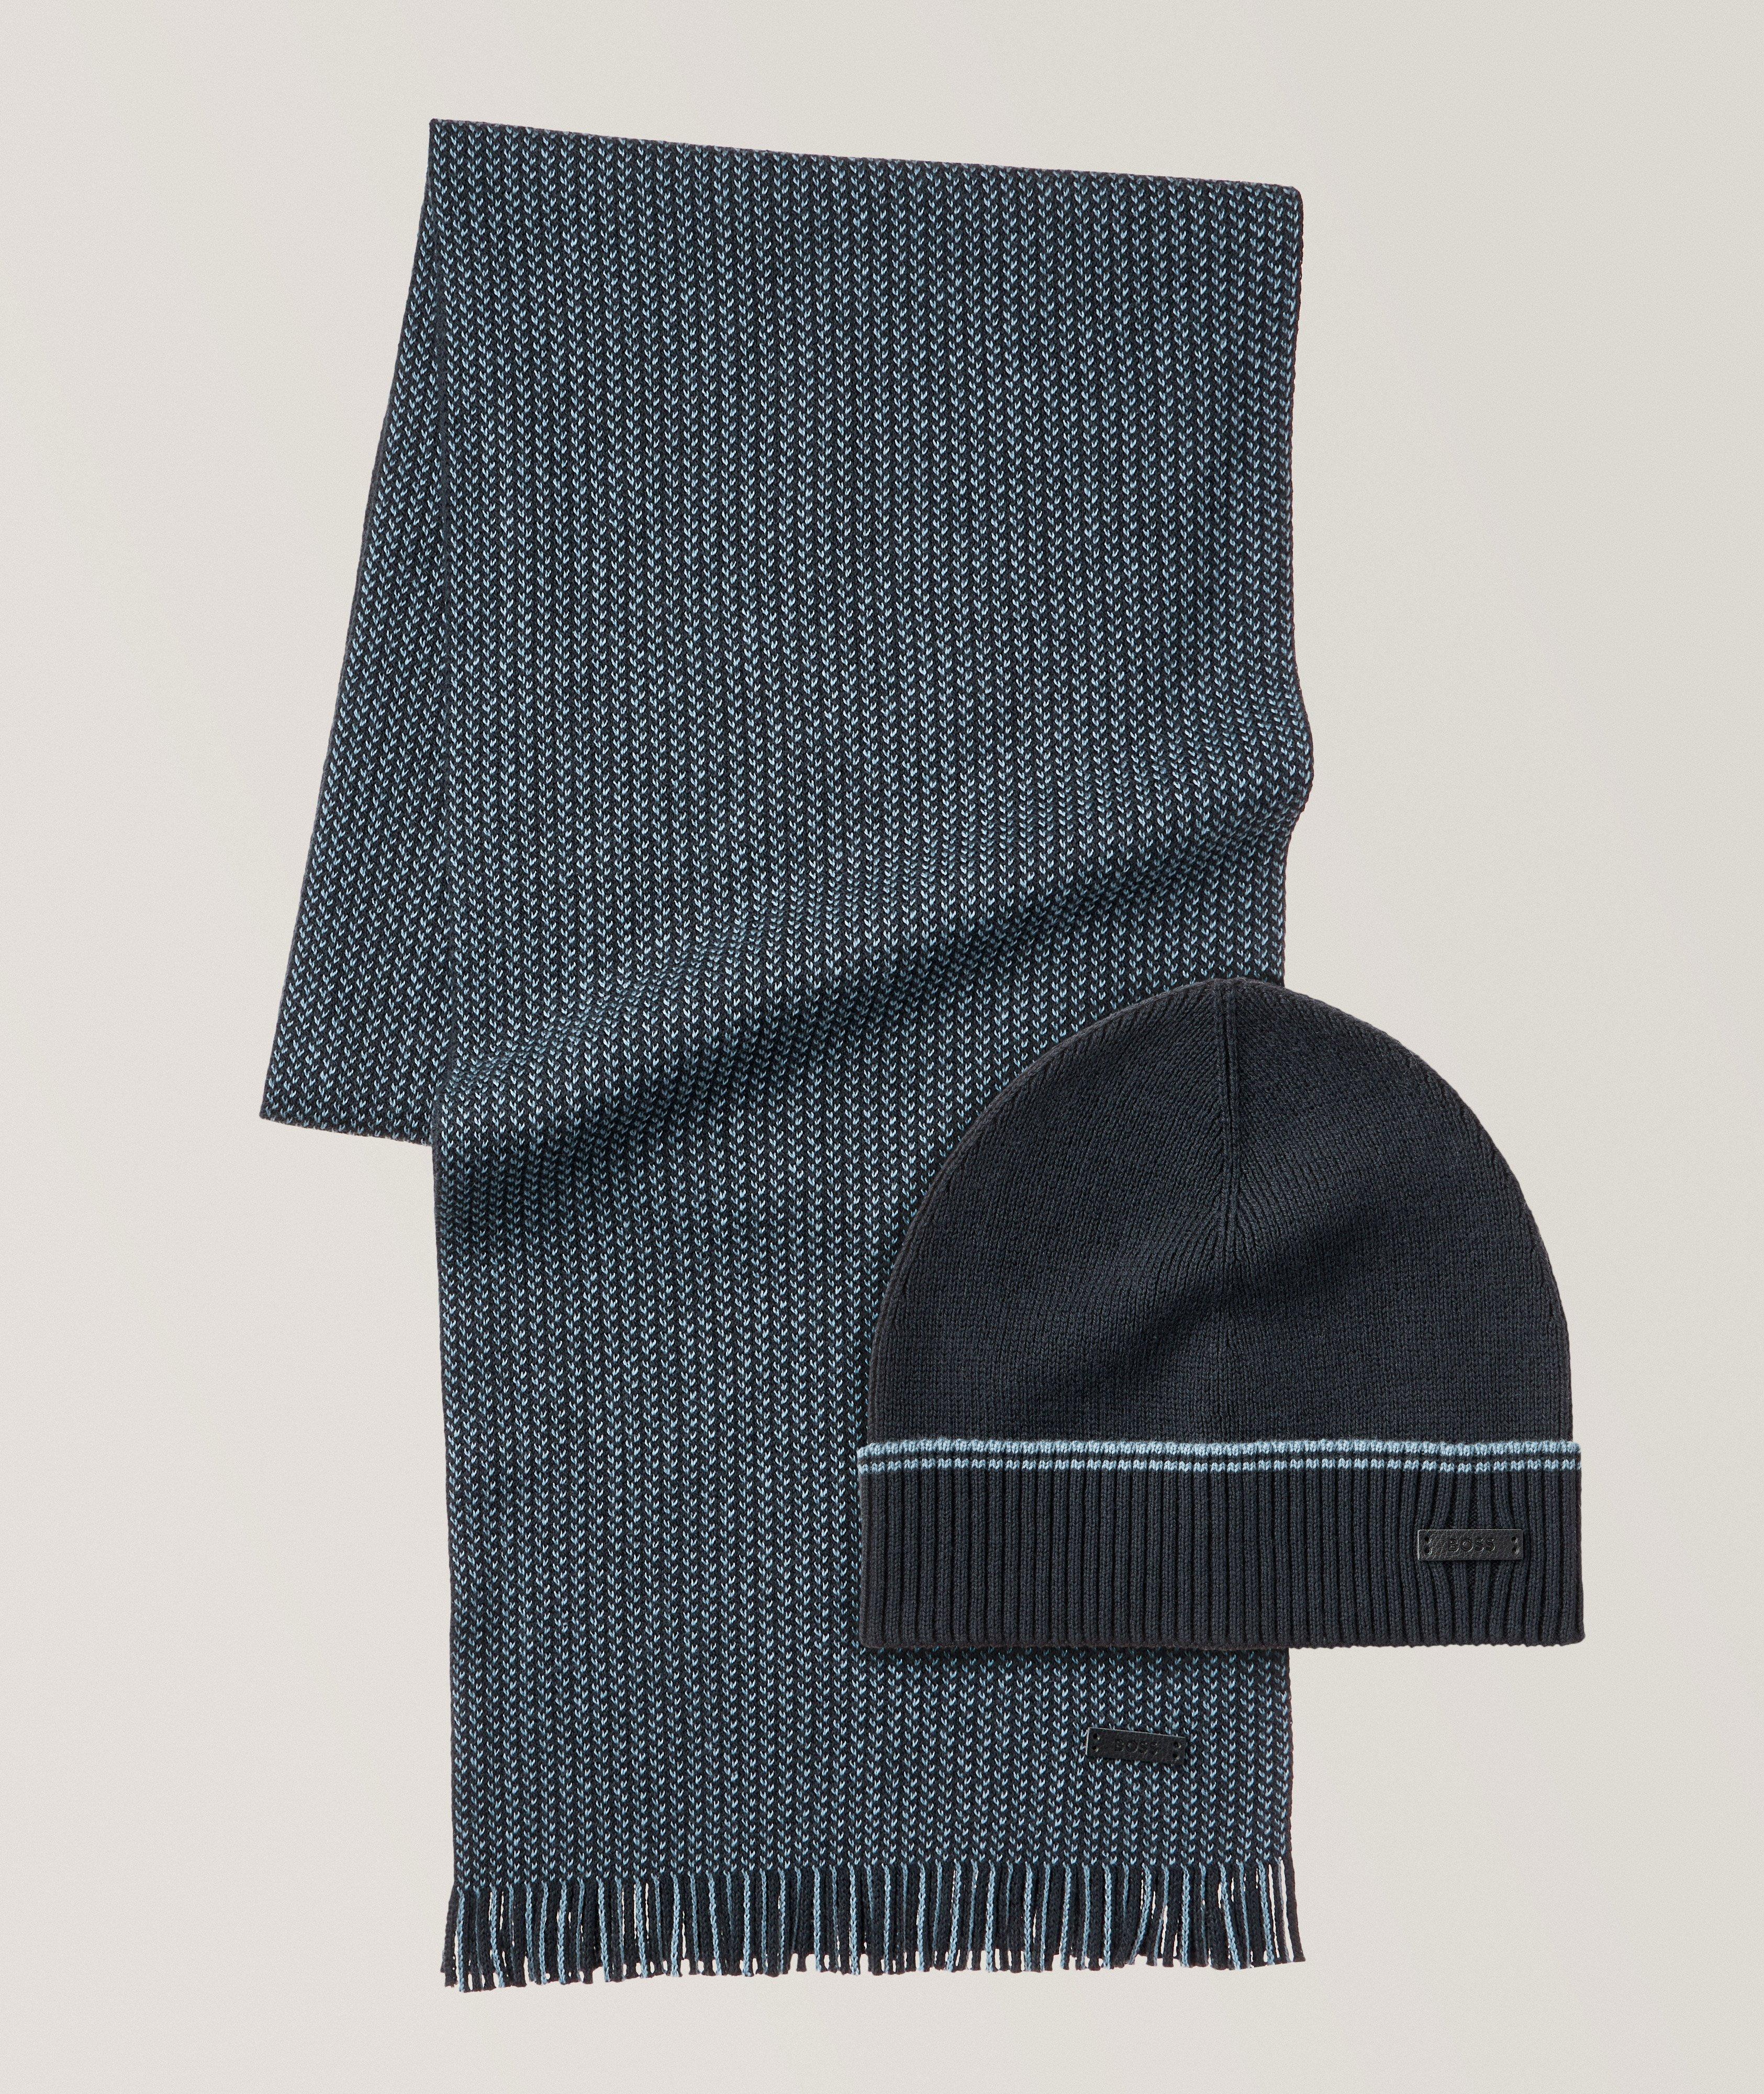 Raschel Knit Cotton-Wool Scarf & Beanie Gift Set image 0